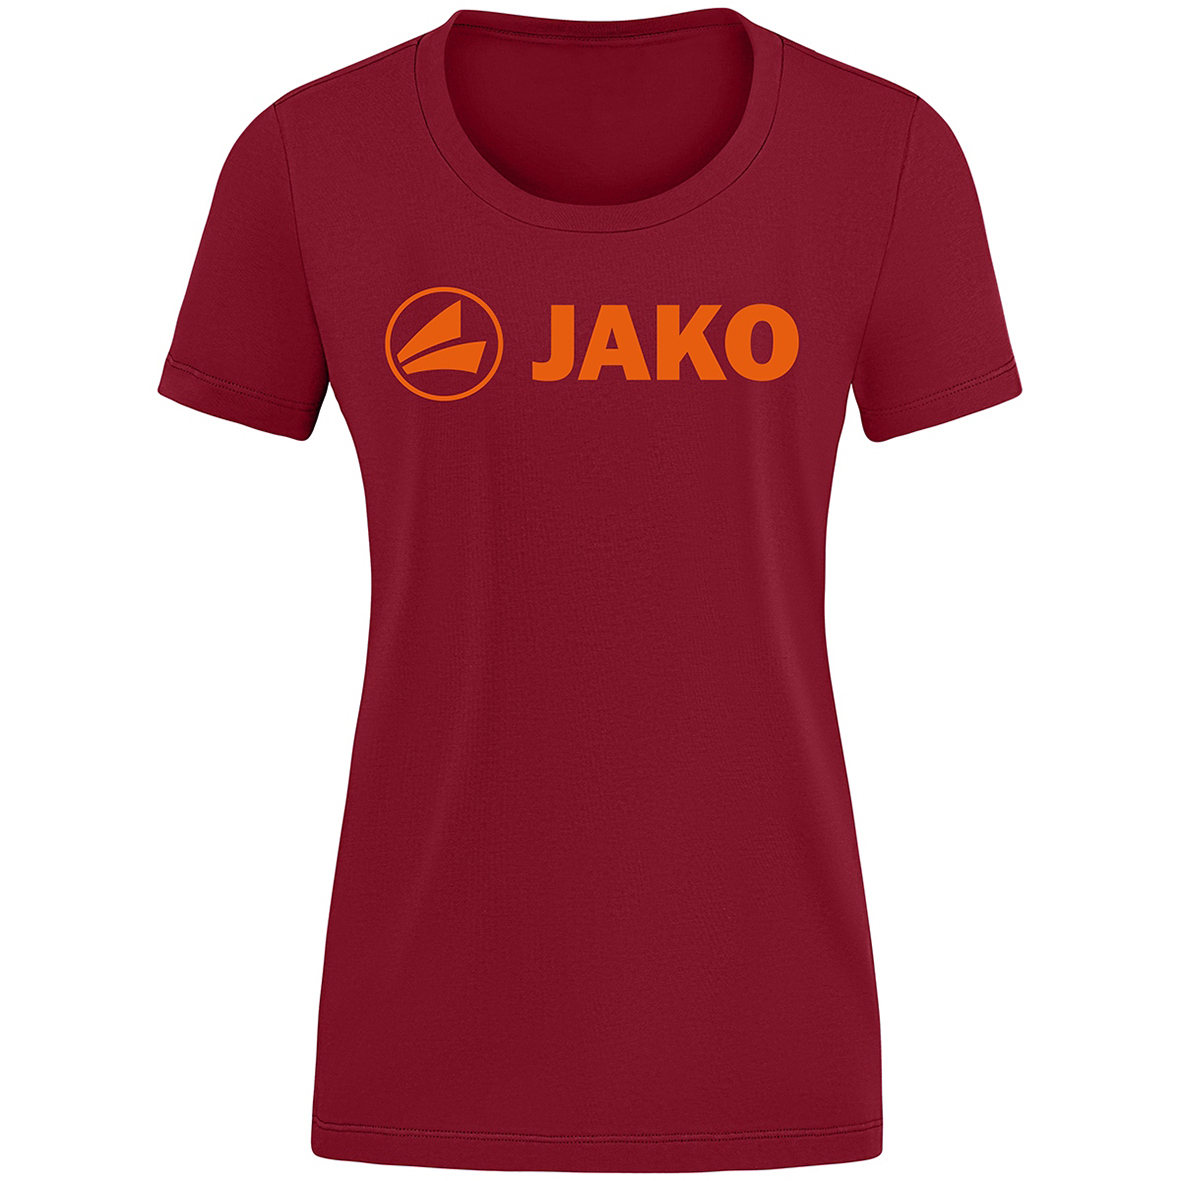 T-SHIRT JAKO PROMO, WINE RED-NEON ORANGE WOMEN.